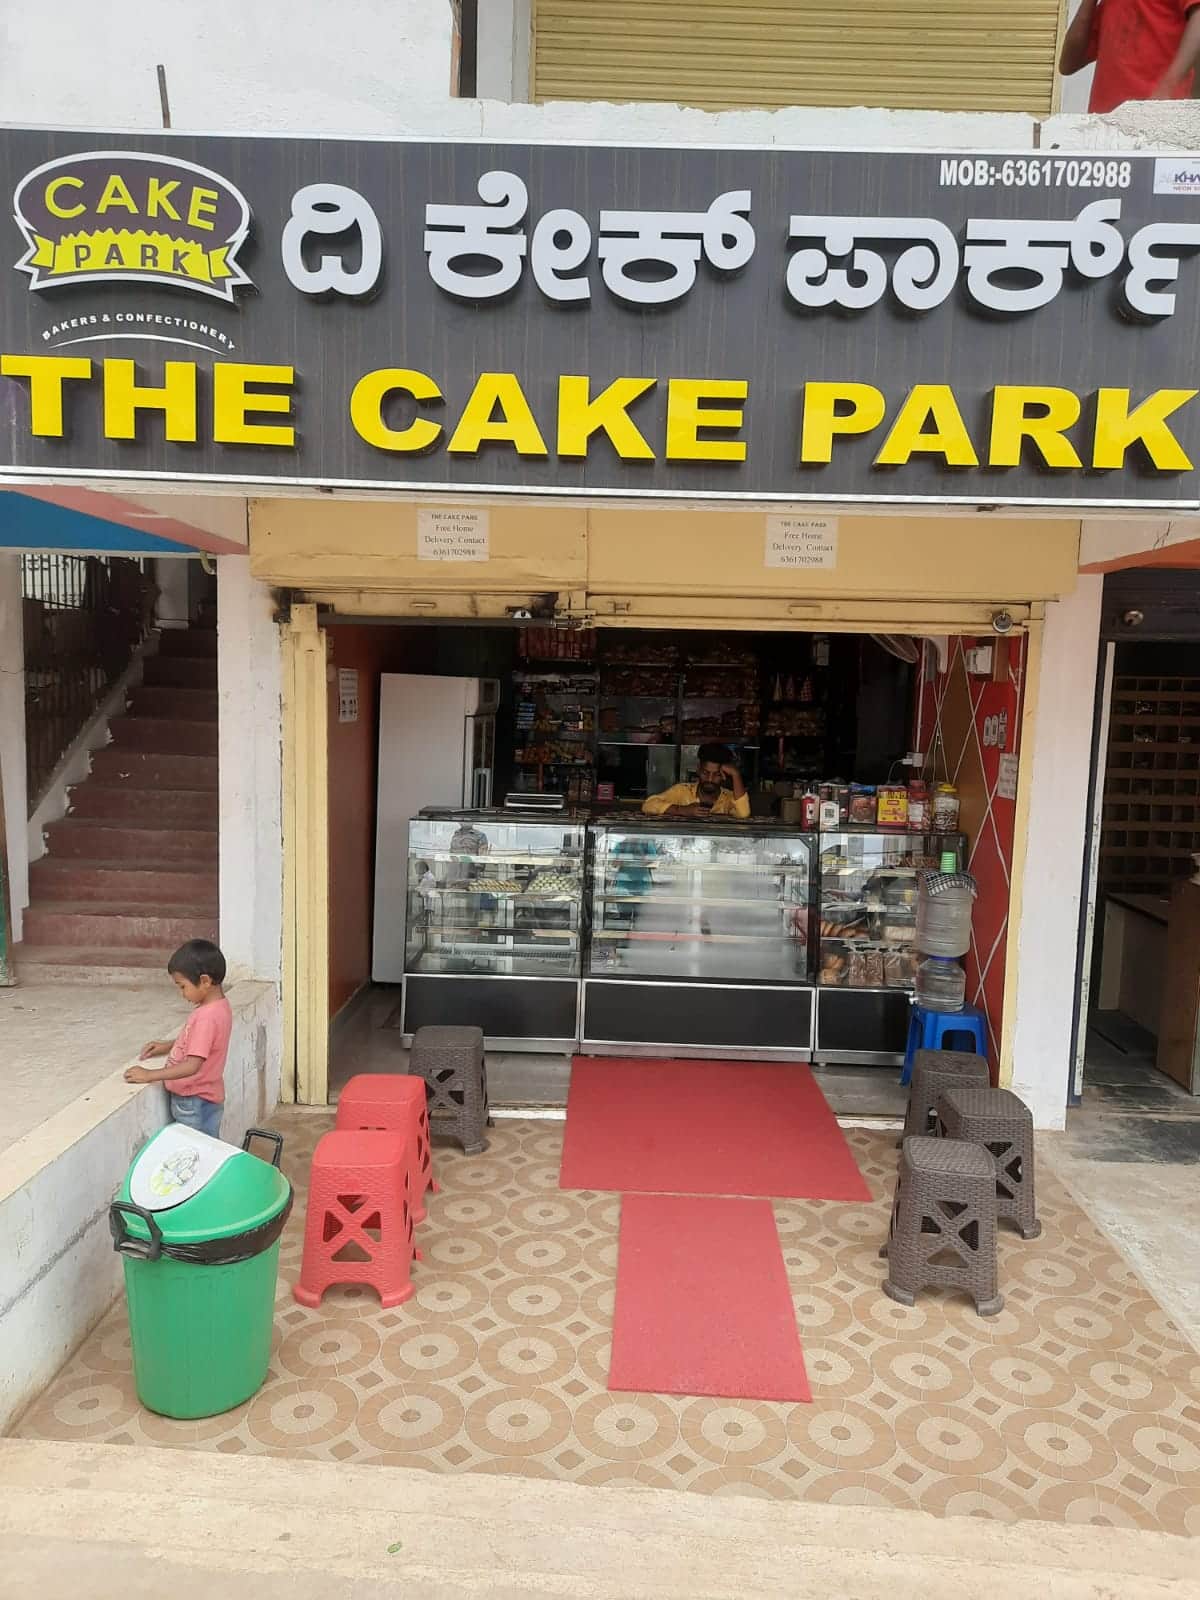 Mini Park – Freed's Bakery